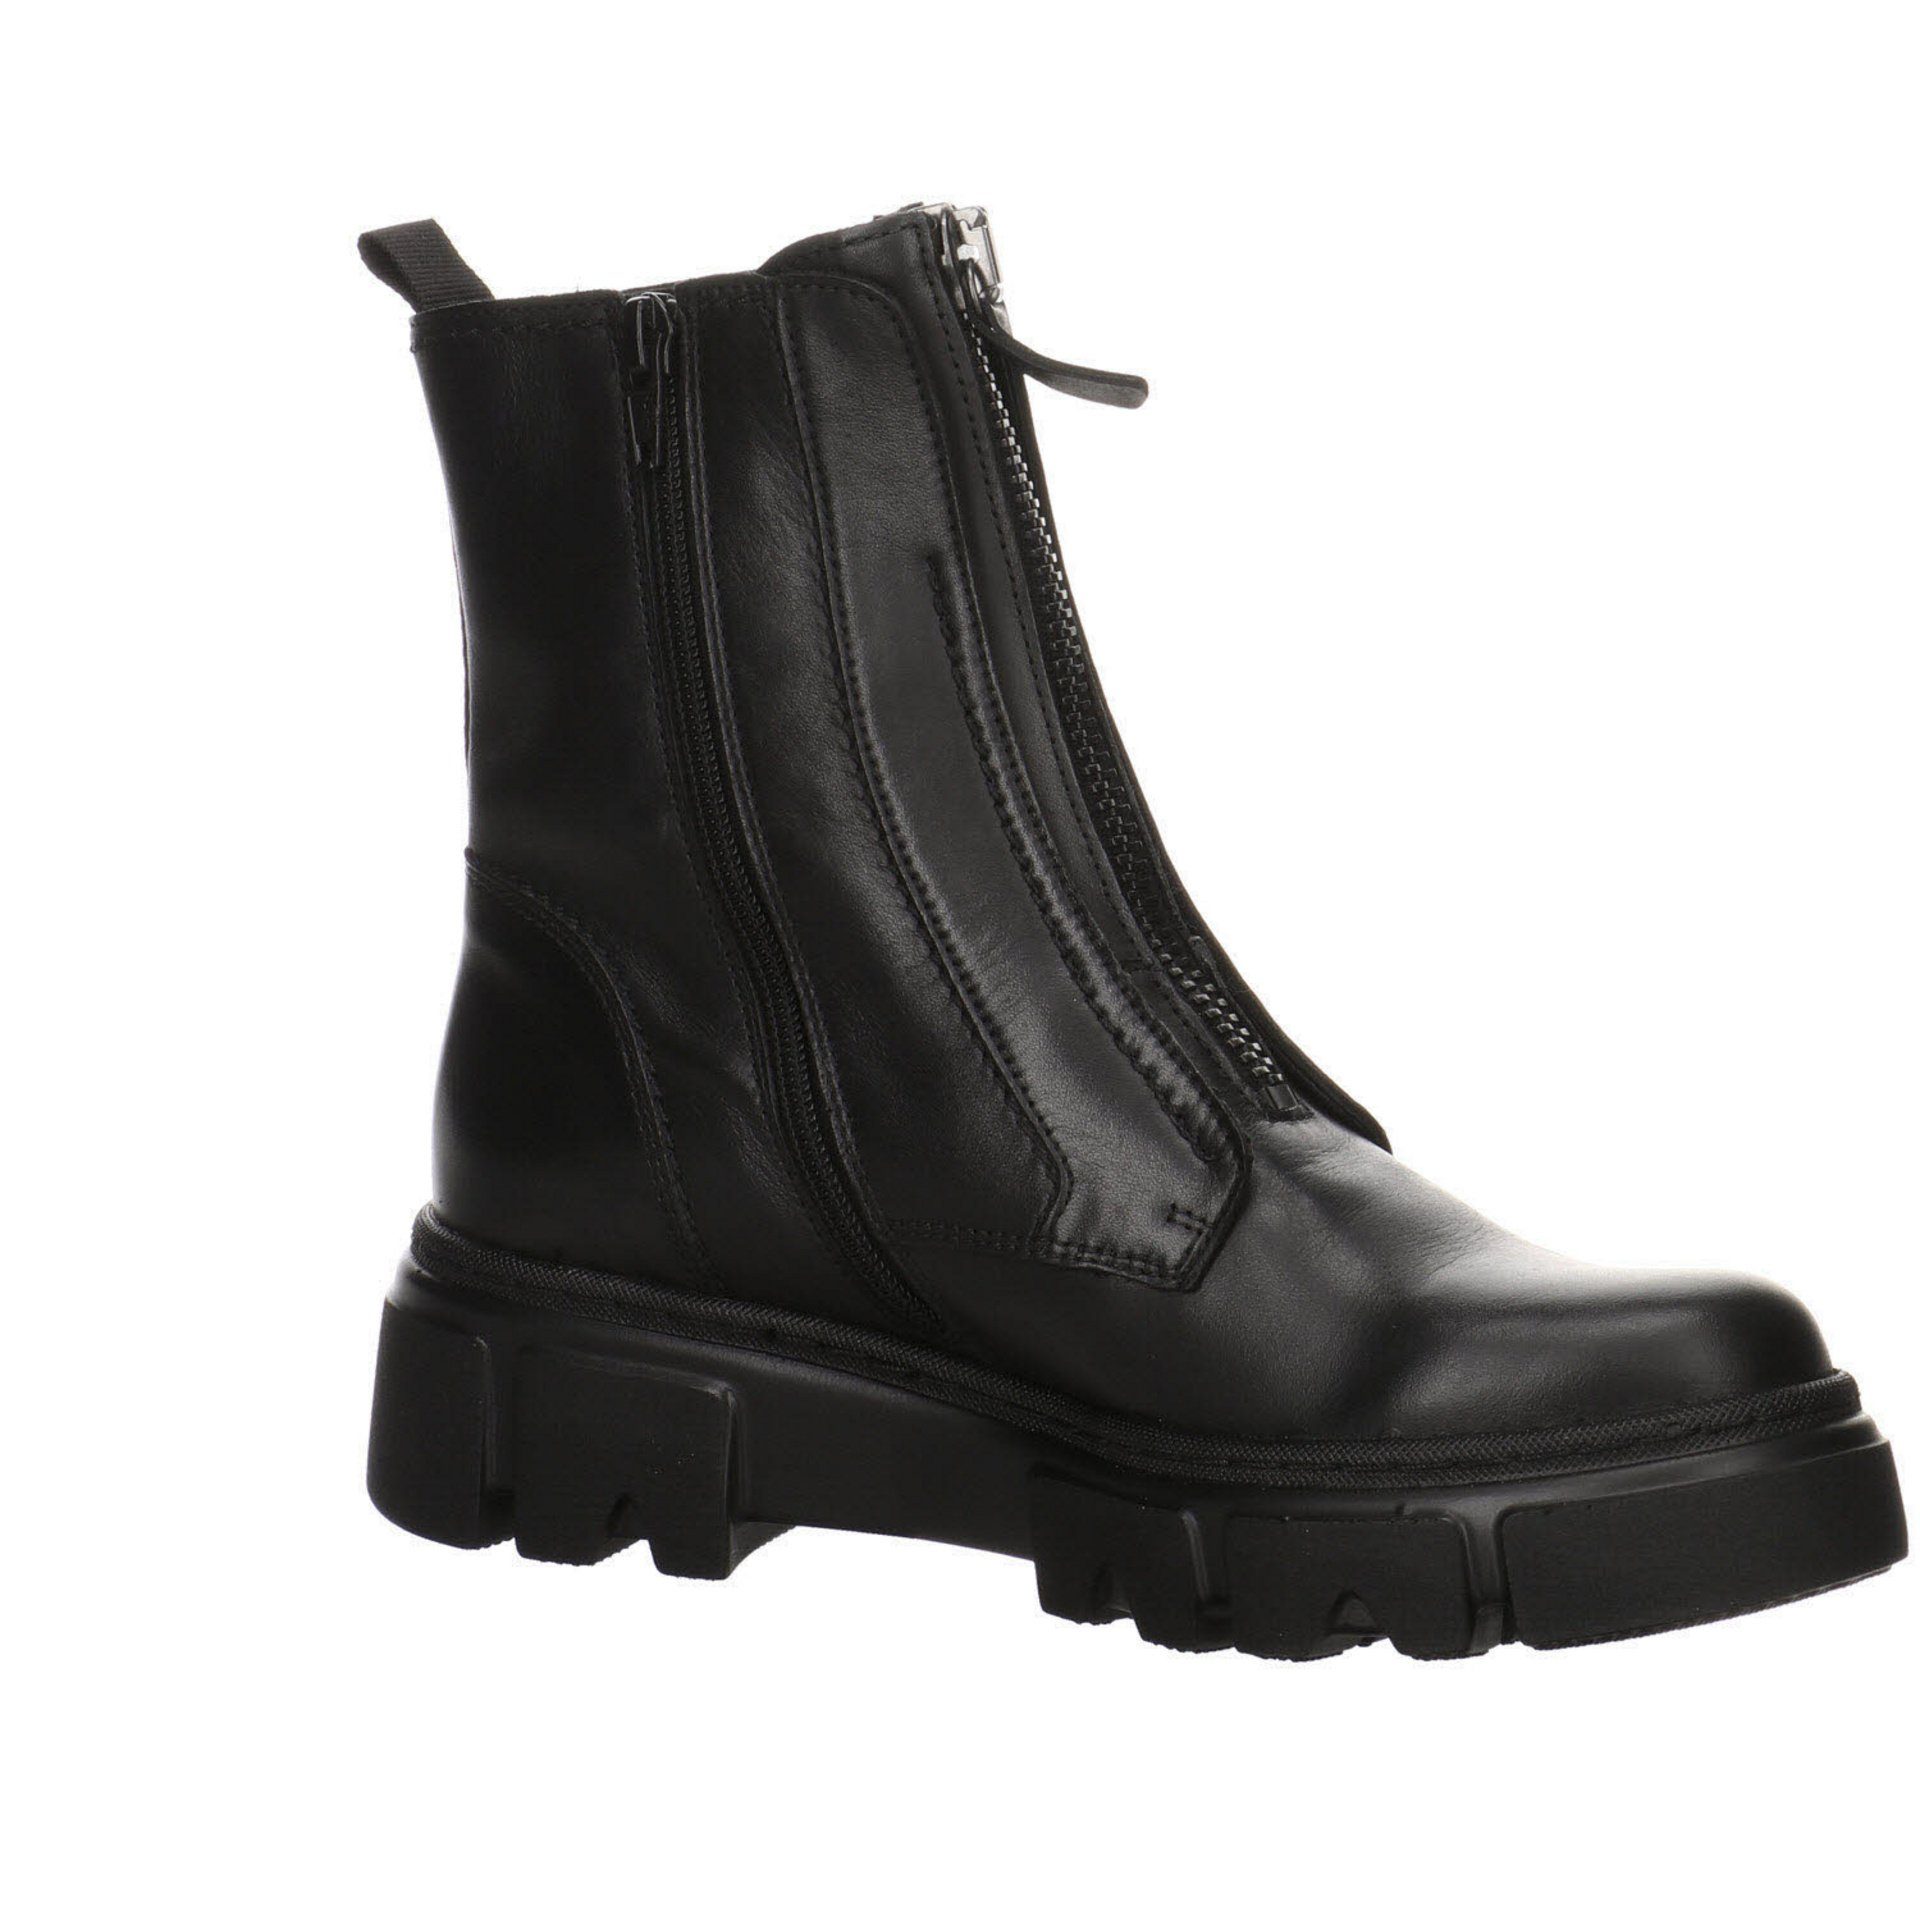 Glattleder Schuhe Damen Stiefelette schwarz(altsilber) Boots Elegant Gabor Stiefeletten Freizeit